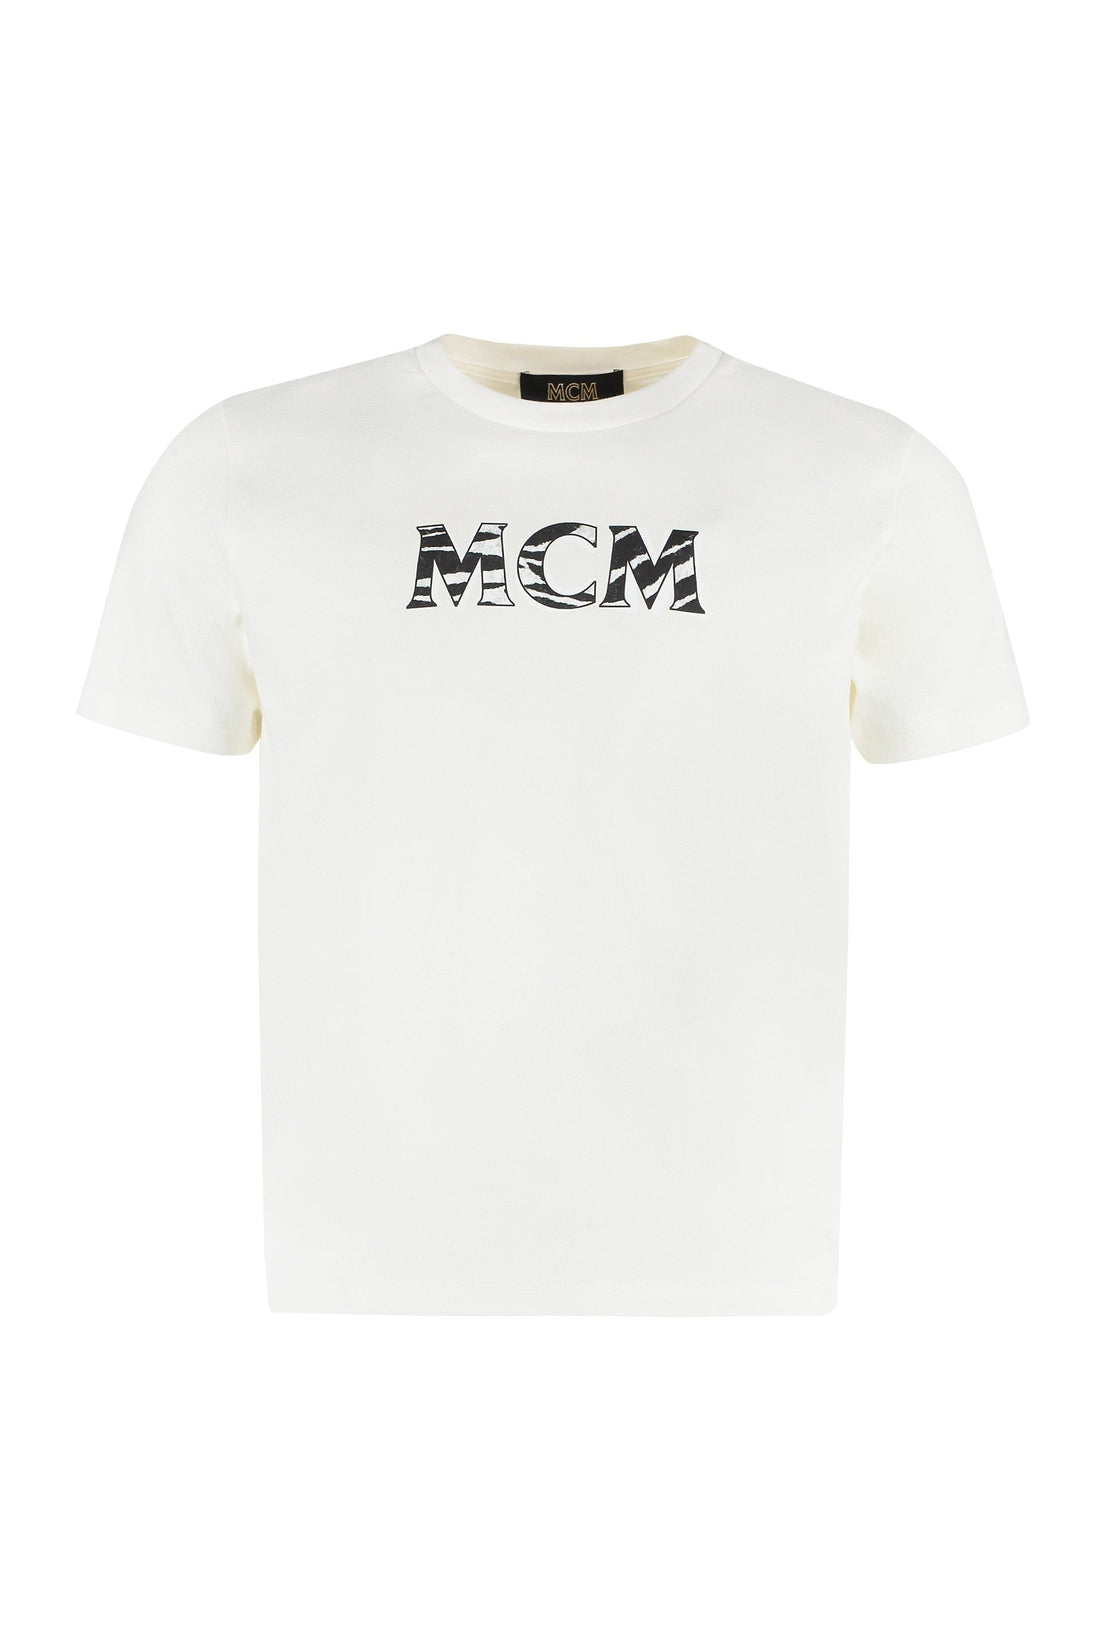 MCM-OUTLET-SALE-Logo cotton t-shirt-ARCHIVIST